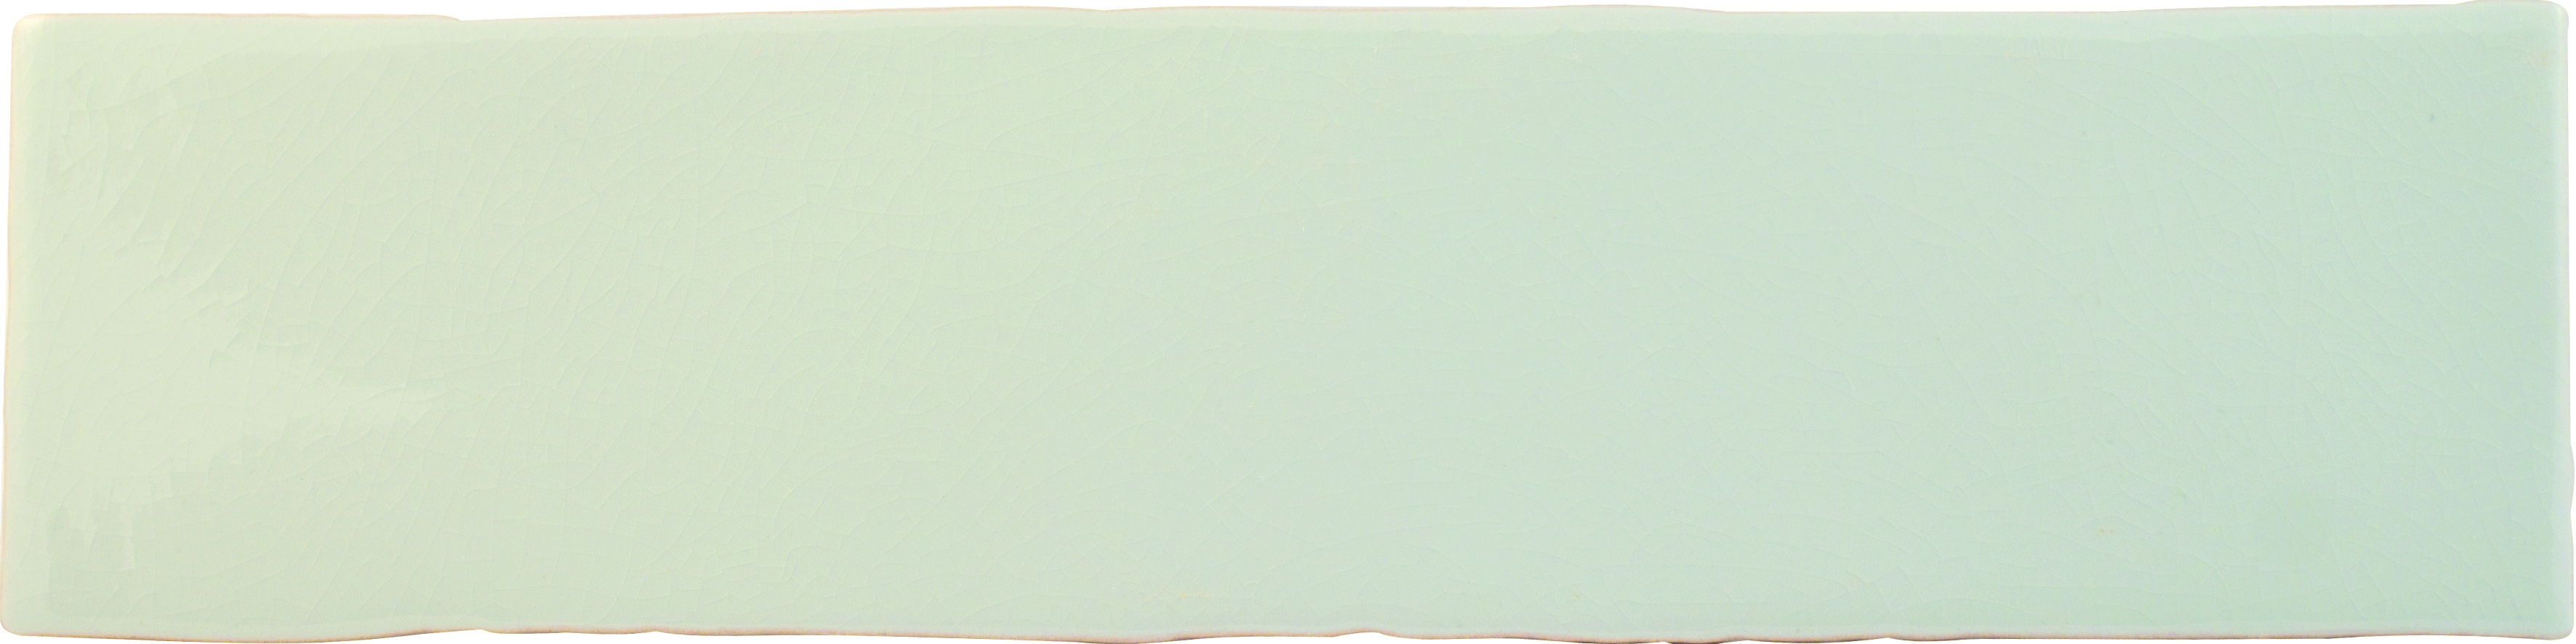 Wandfliese 7,5x30 cm  hellgrau  glänzend
Cevica  Alaska  Grey ( Craquele ) 
Art: A53846